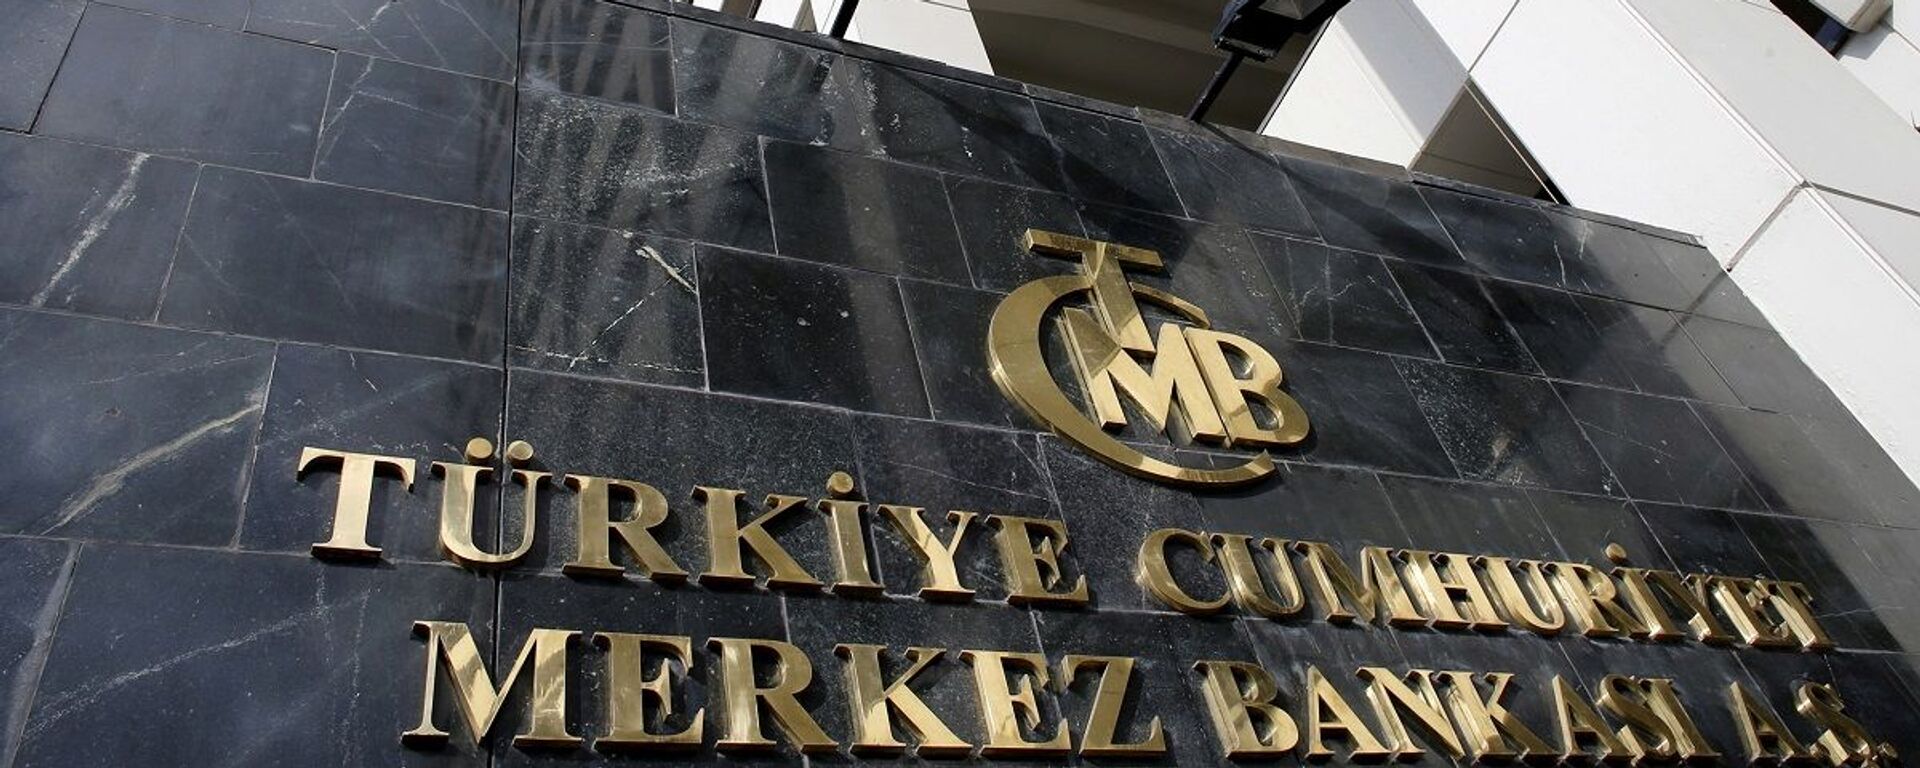 Merkez Bankası - Sputnik Türkiye, 1920, 19.11.2021